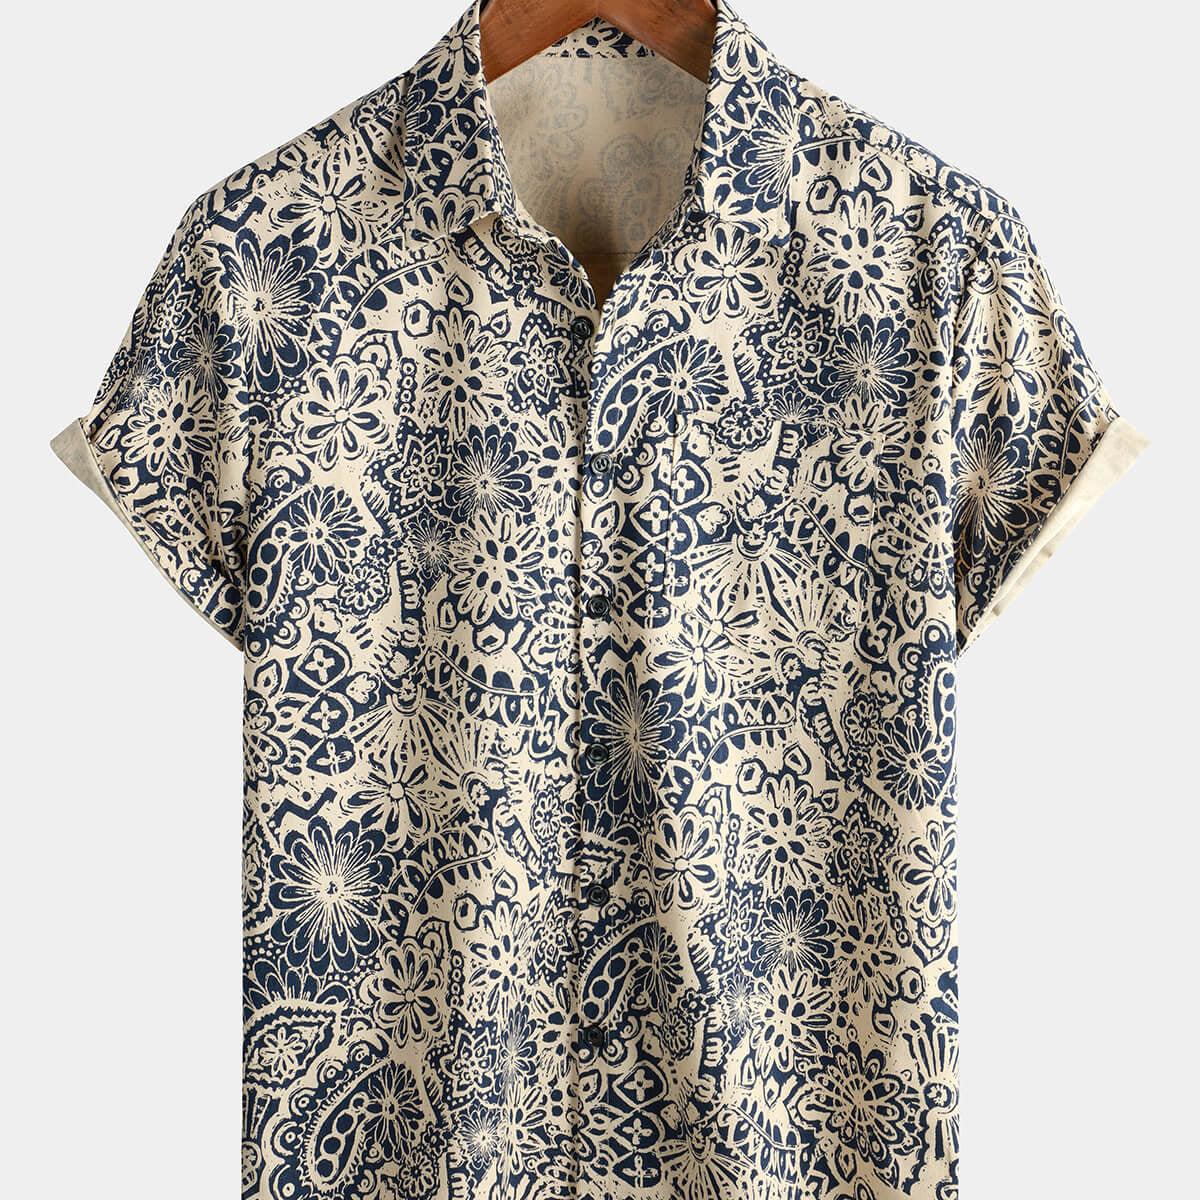 Camisa retro con botones florales y manga corta con estampado de cachemira de los años 70 para hombre